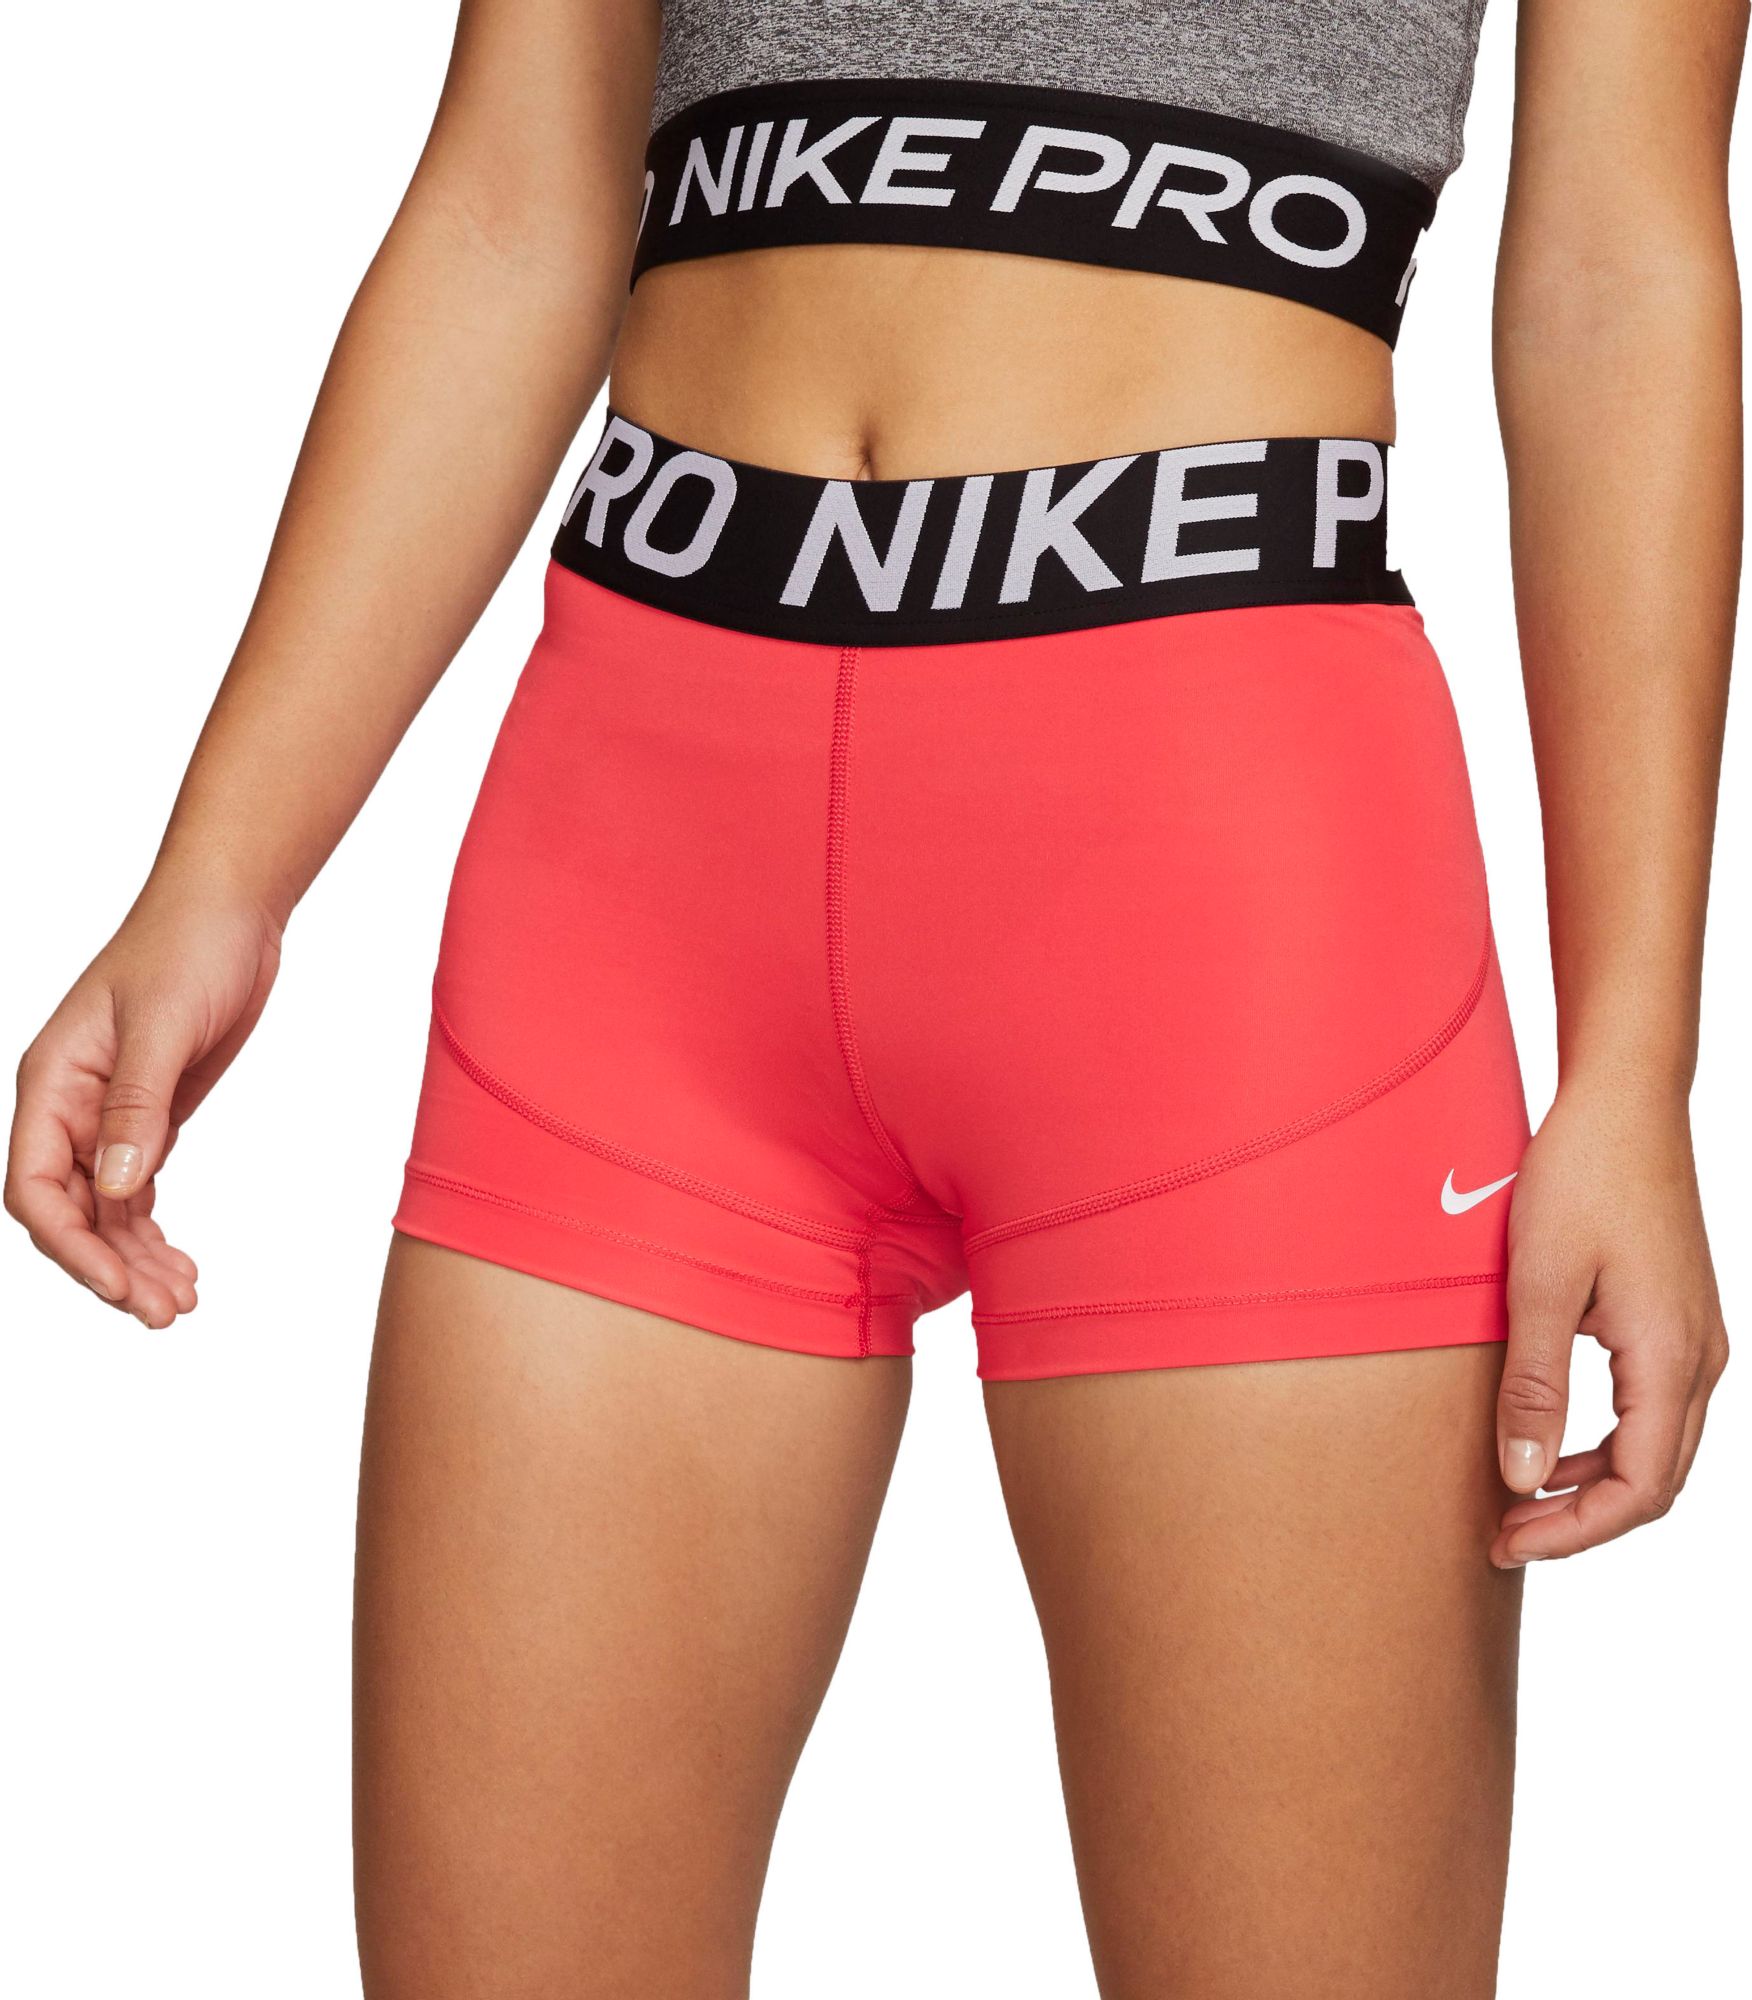 Nike Pro Shorts \u0026 Nike Pro Spandex 